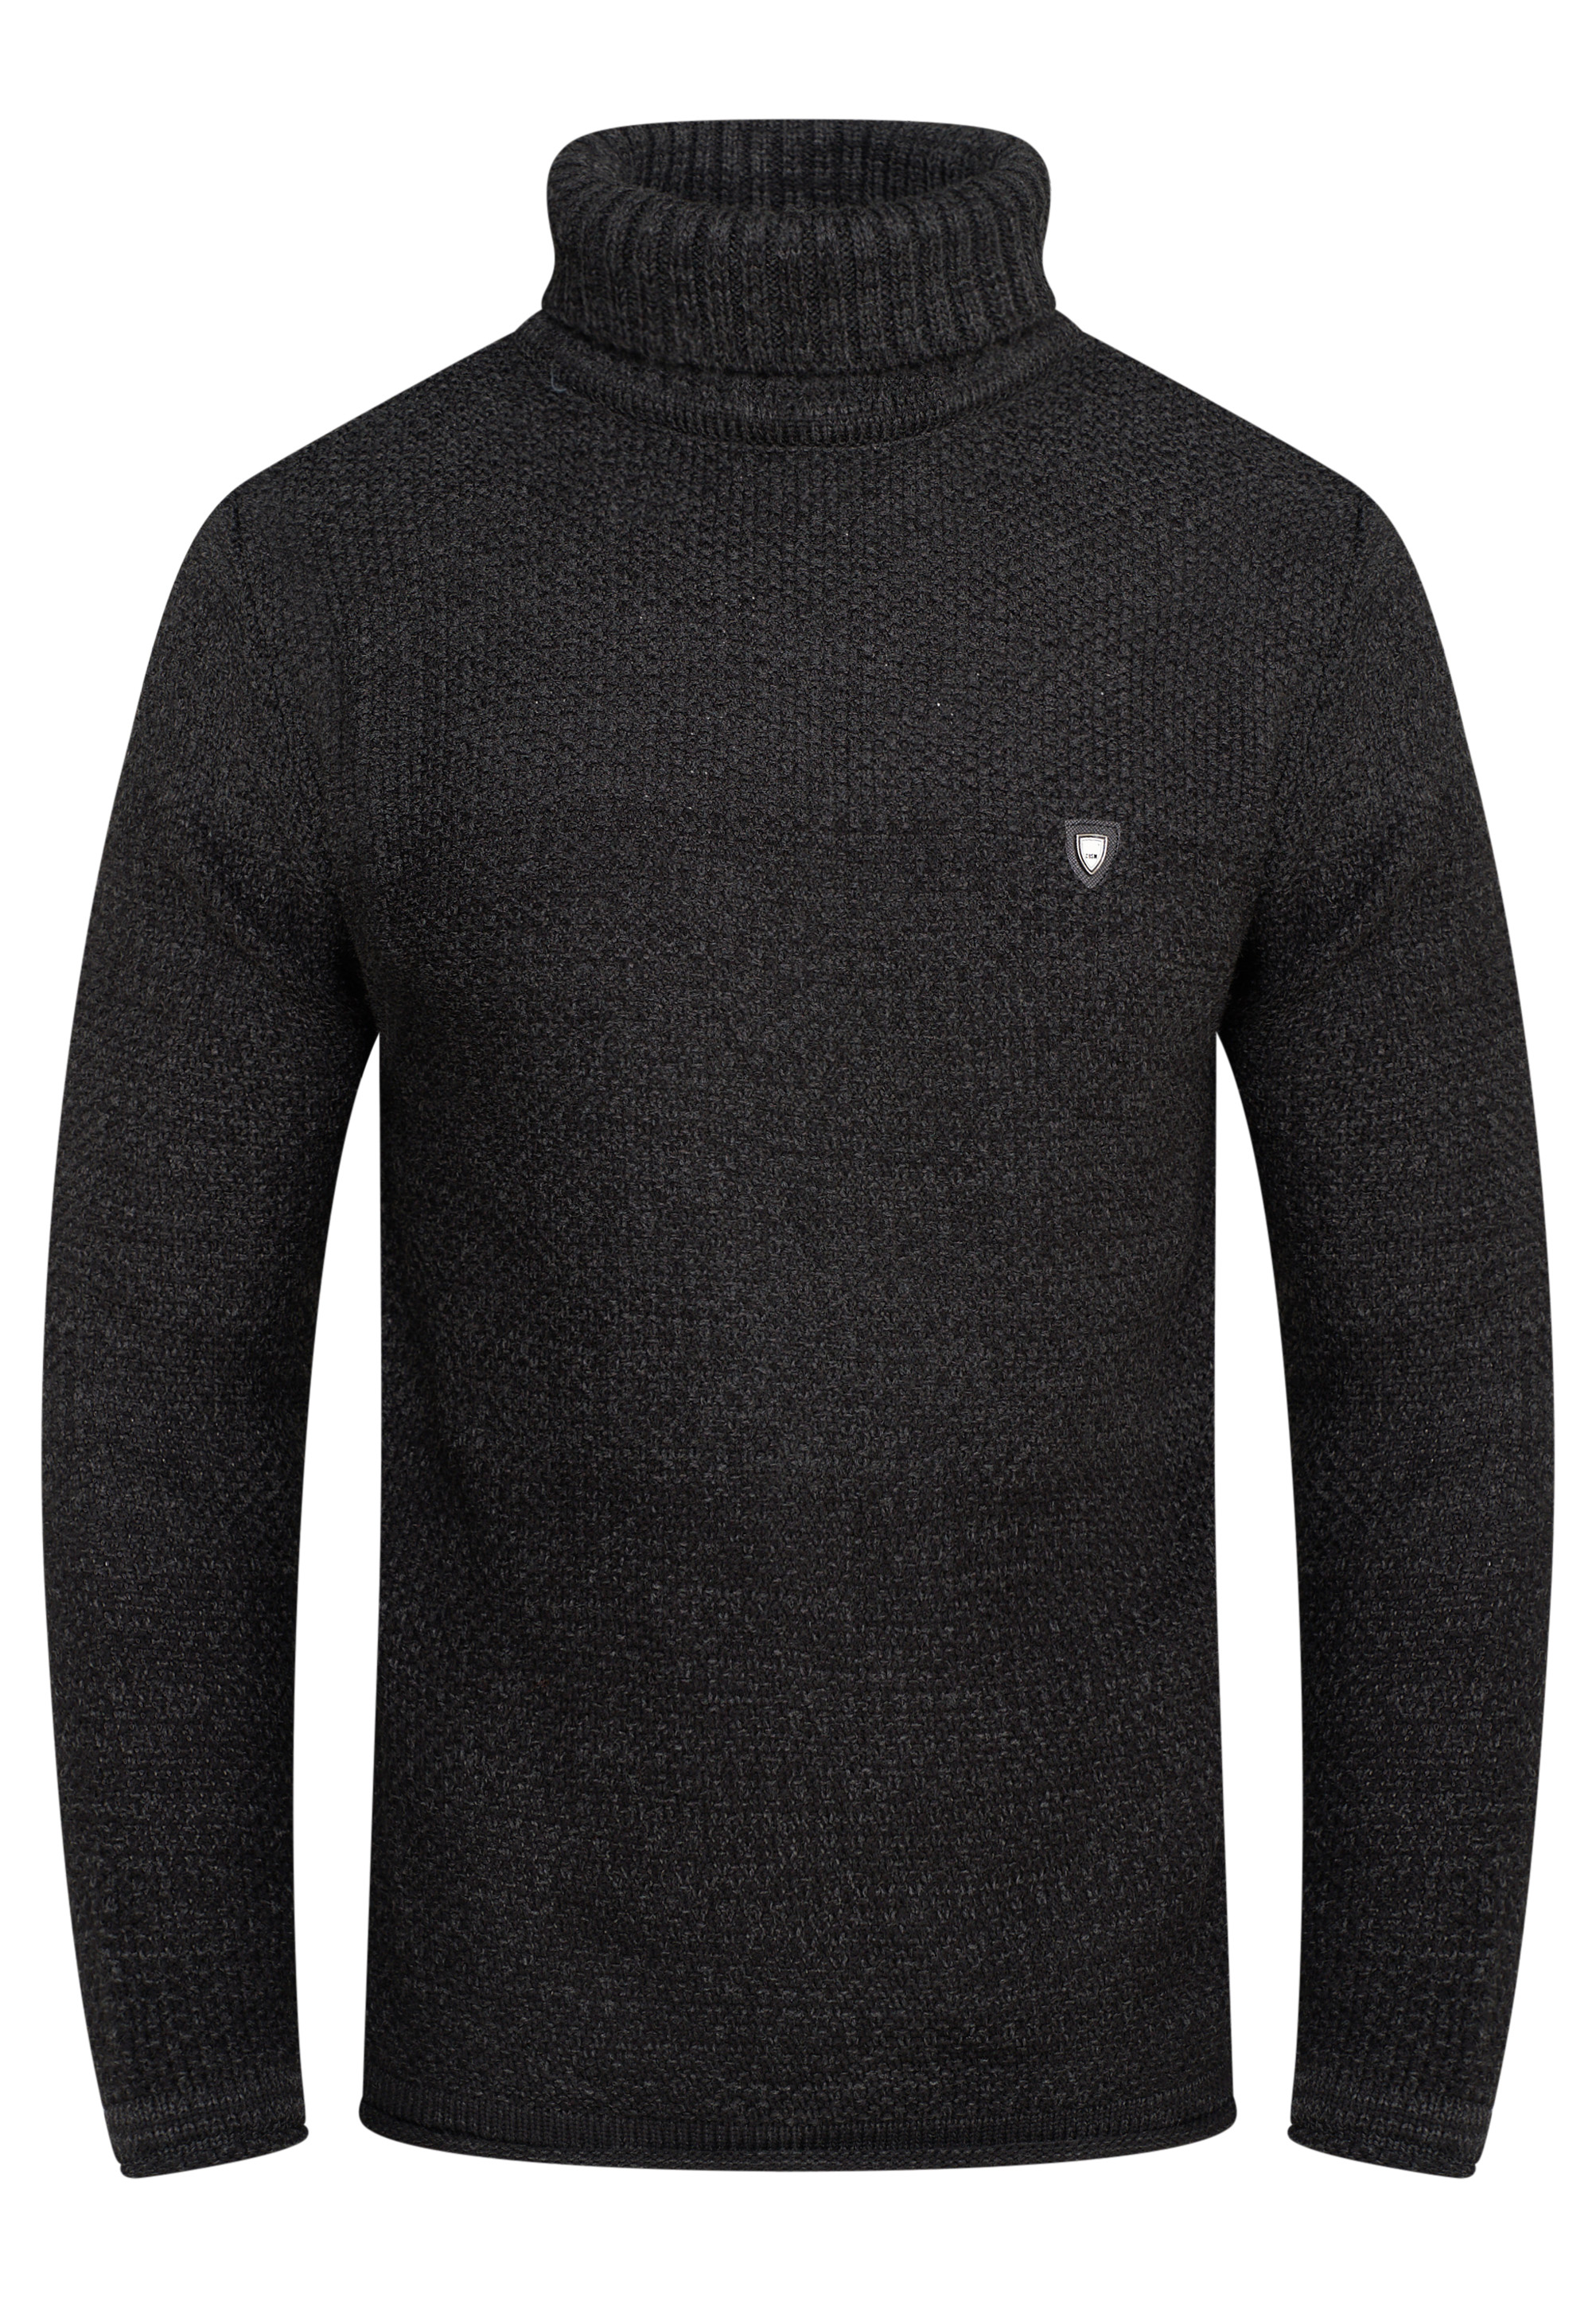 Пуловер behype Rollkragen MKBloro, темно серый пуловер behype mkboni серый